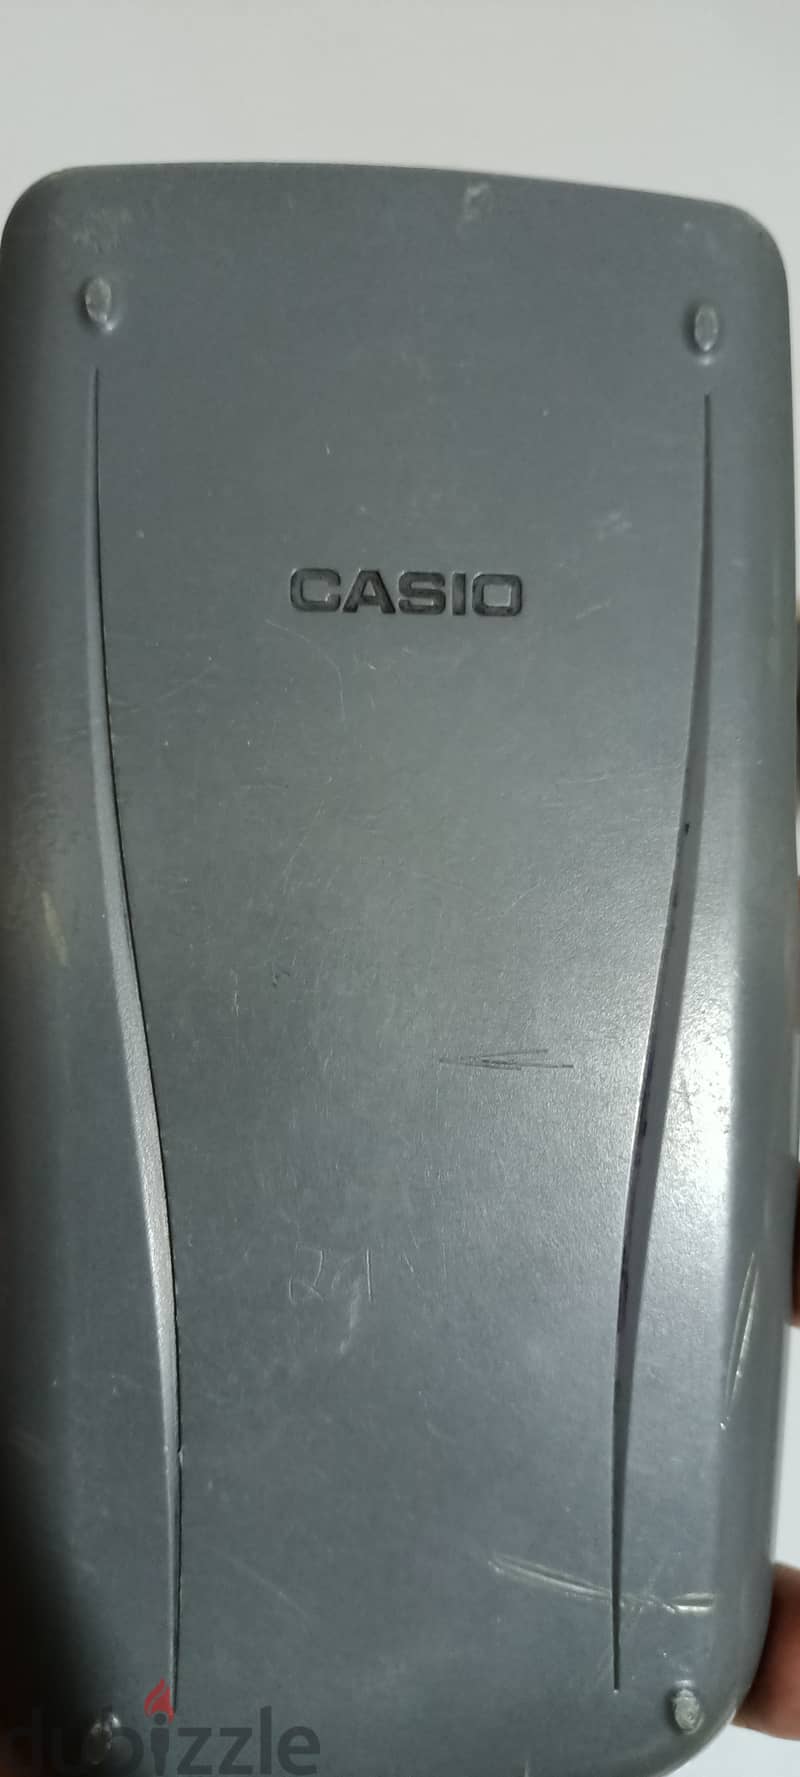 آلة كاسيو 1